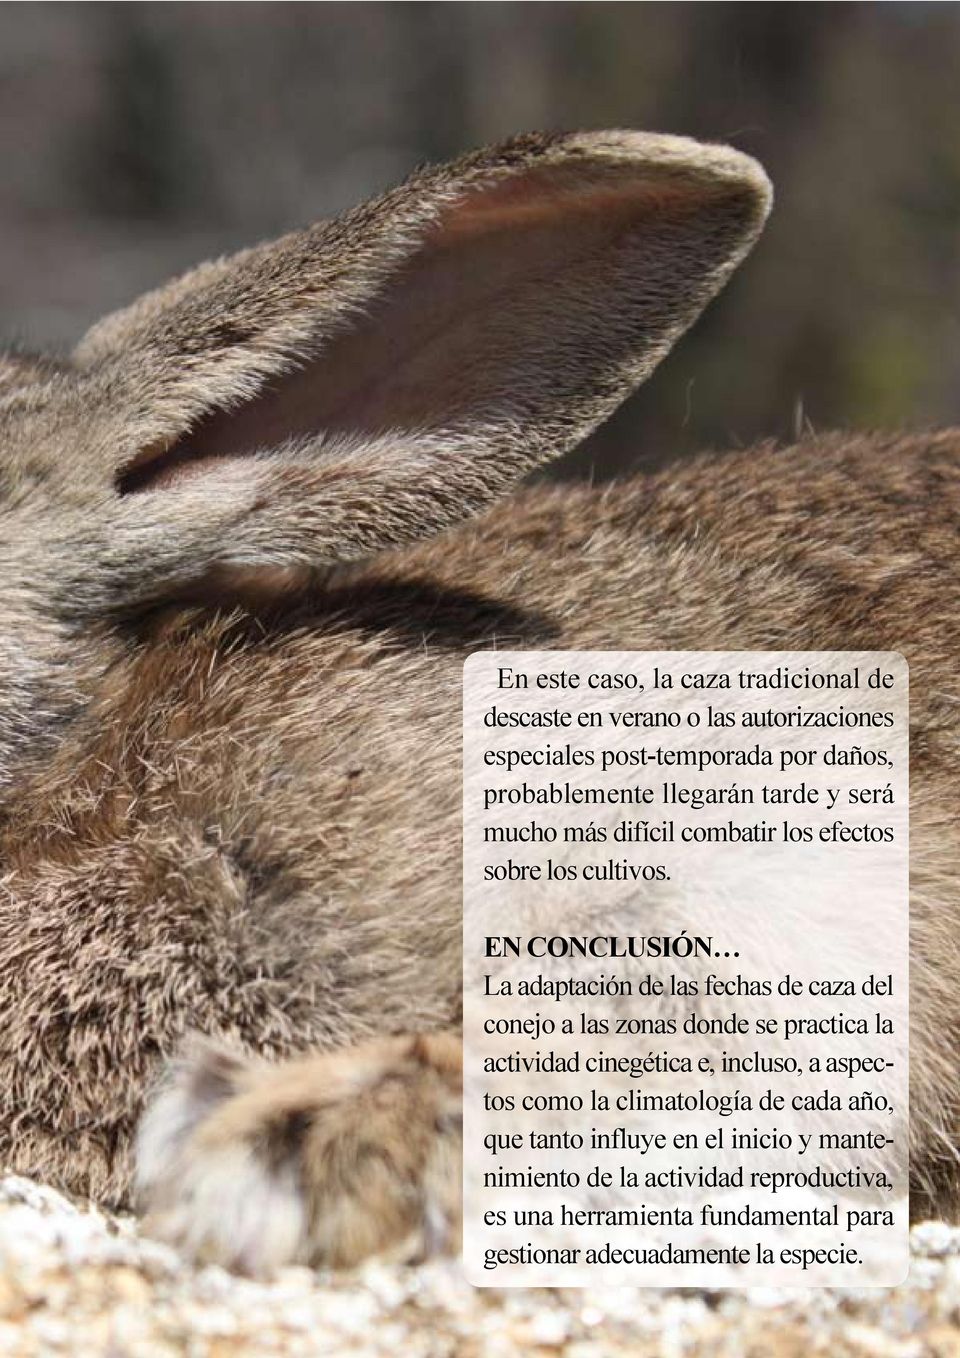 En conclusión La adaptación de las fechas de caza del conejo a las zonas donde se practica la actividad cinegética e, incluso, a